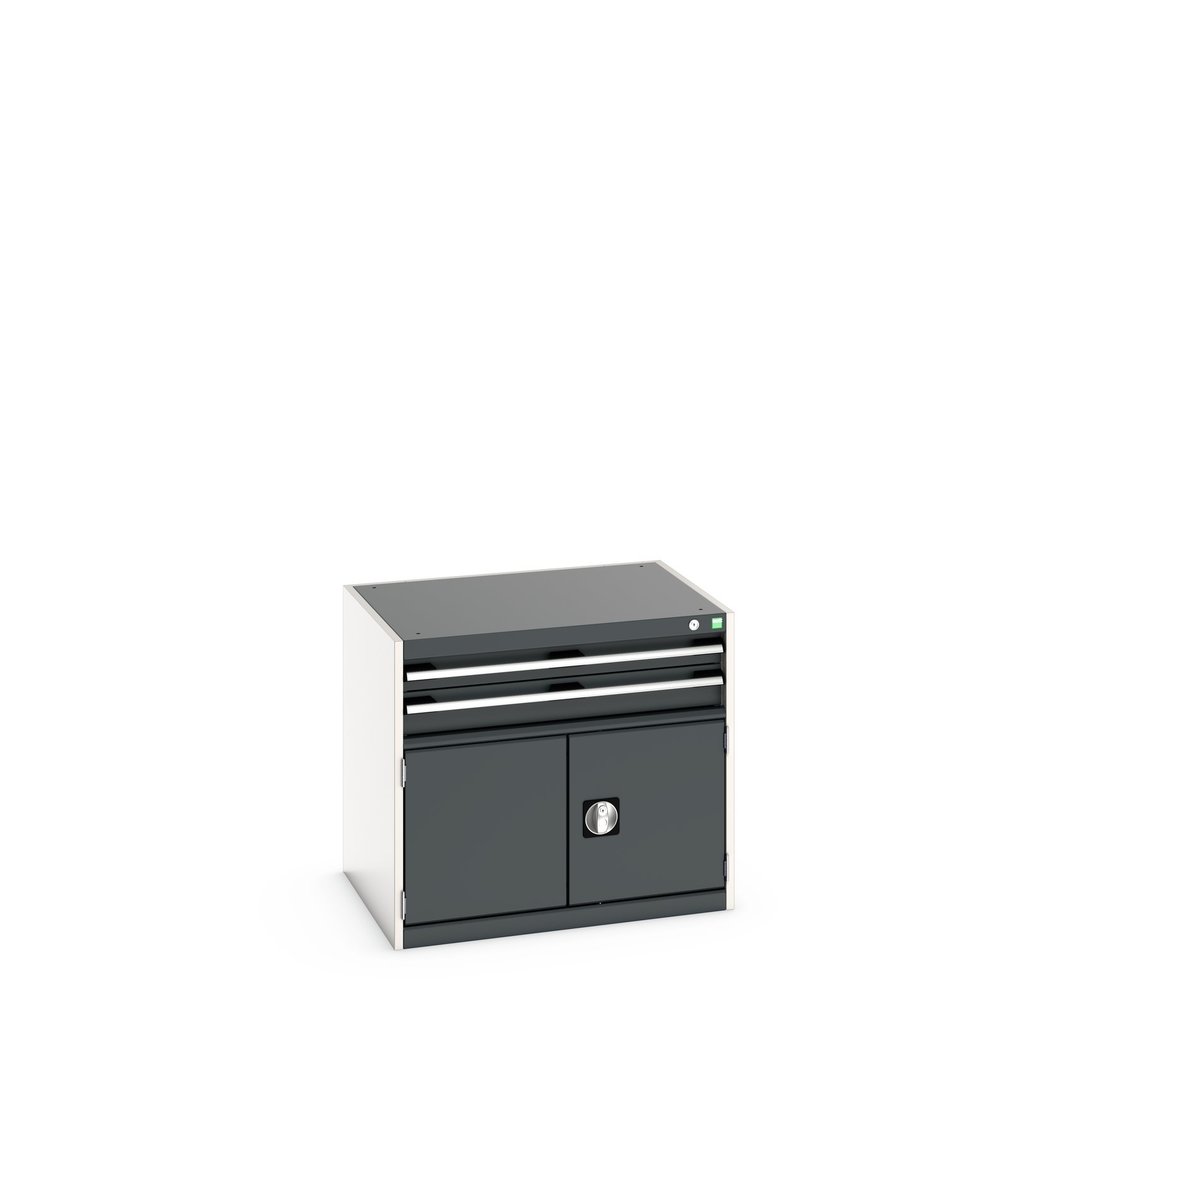 40020012. - cubio drawer-door cabinet